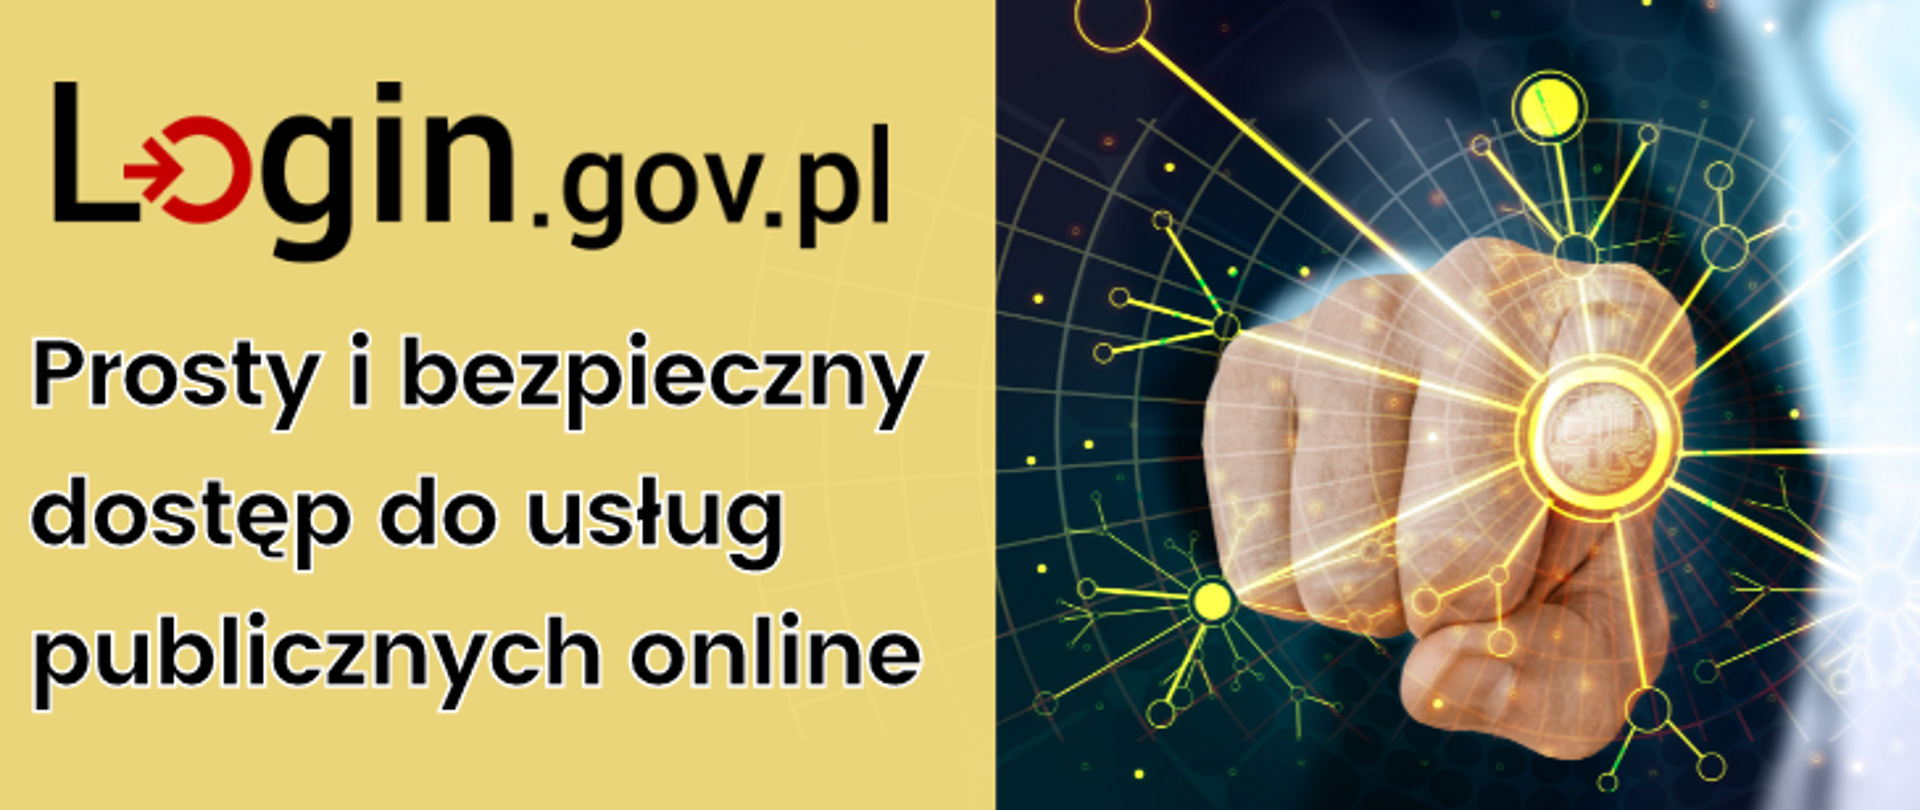 Login.gov.pl prosty i bezpieczny dostęp do usług publicznych online